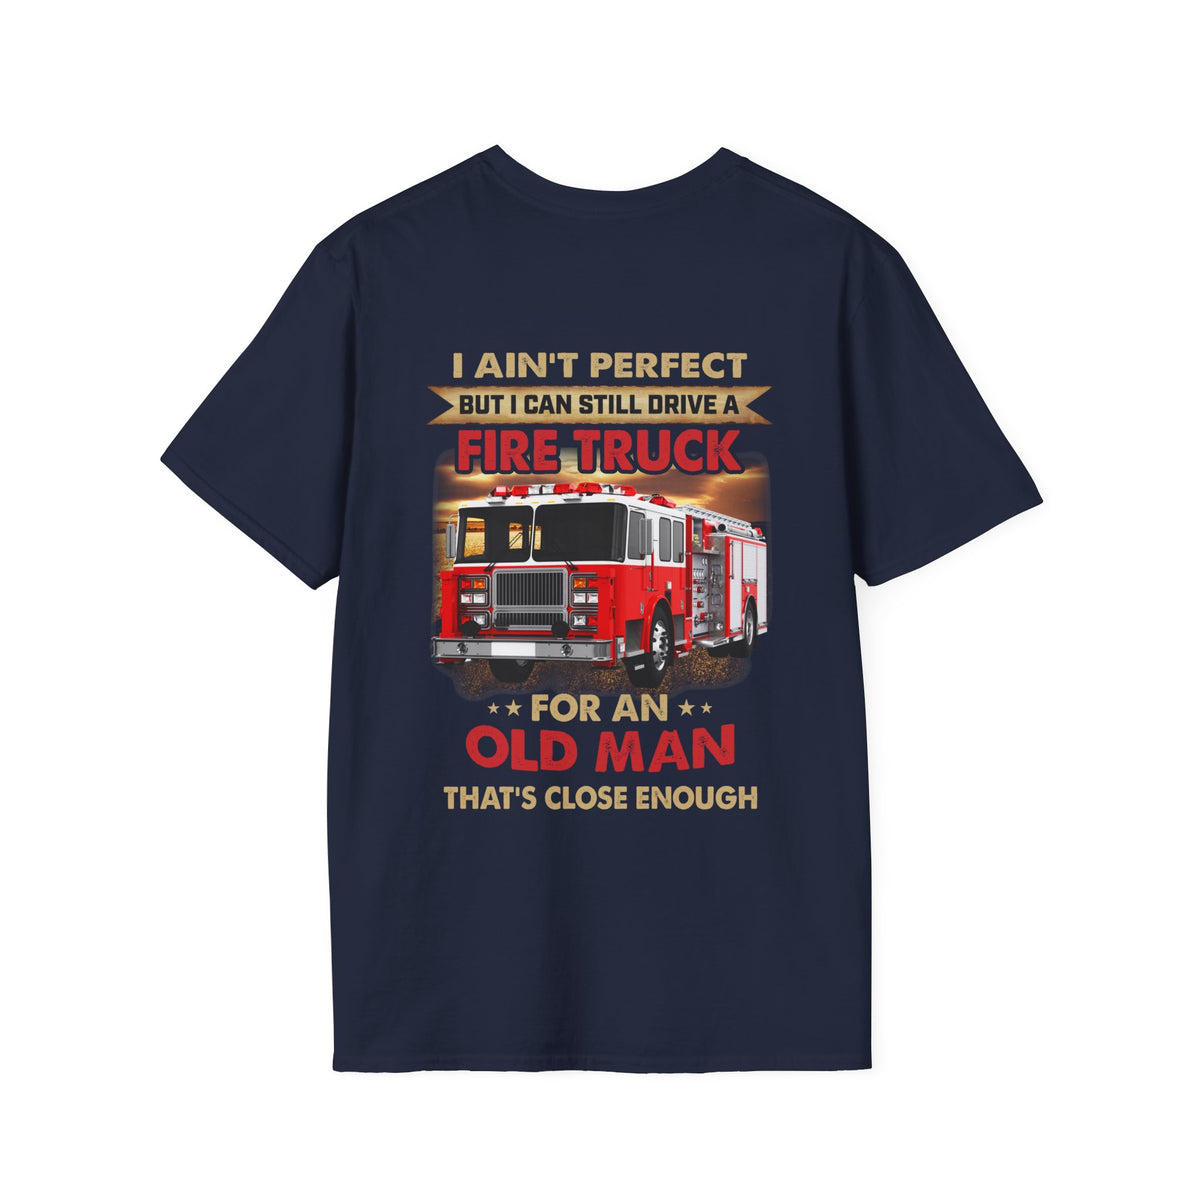 Firefighter T-shirt / Proud Firefighter T-shirt